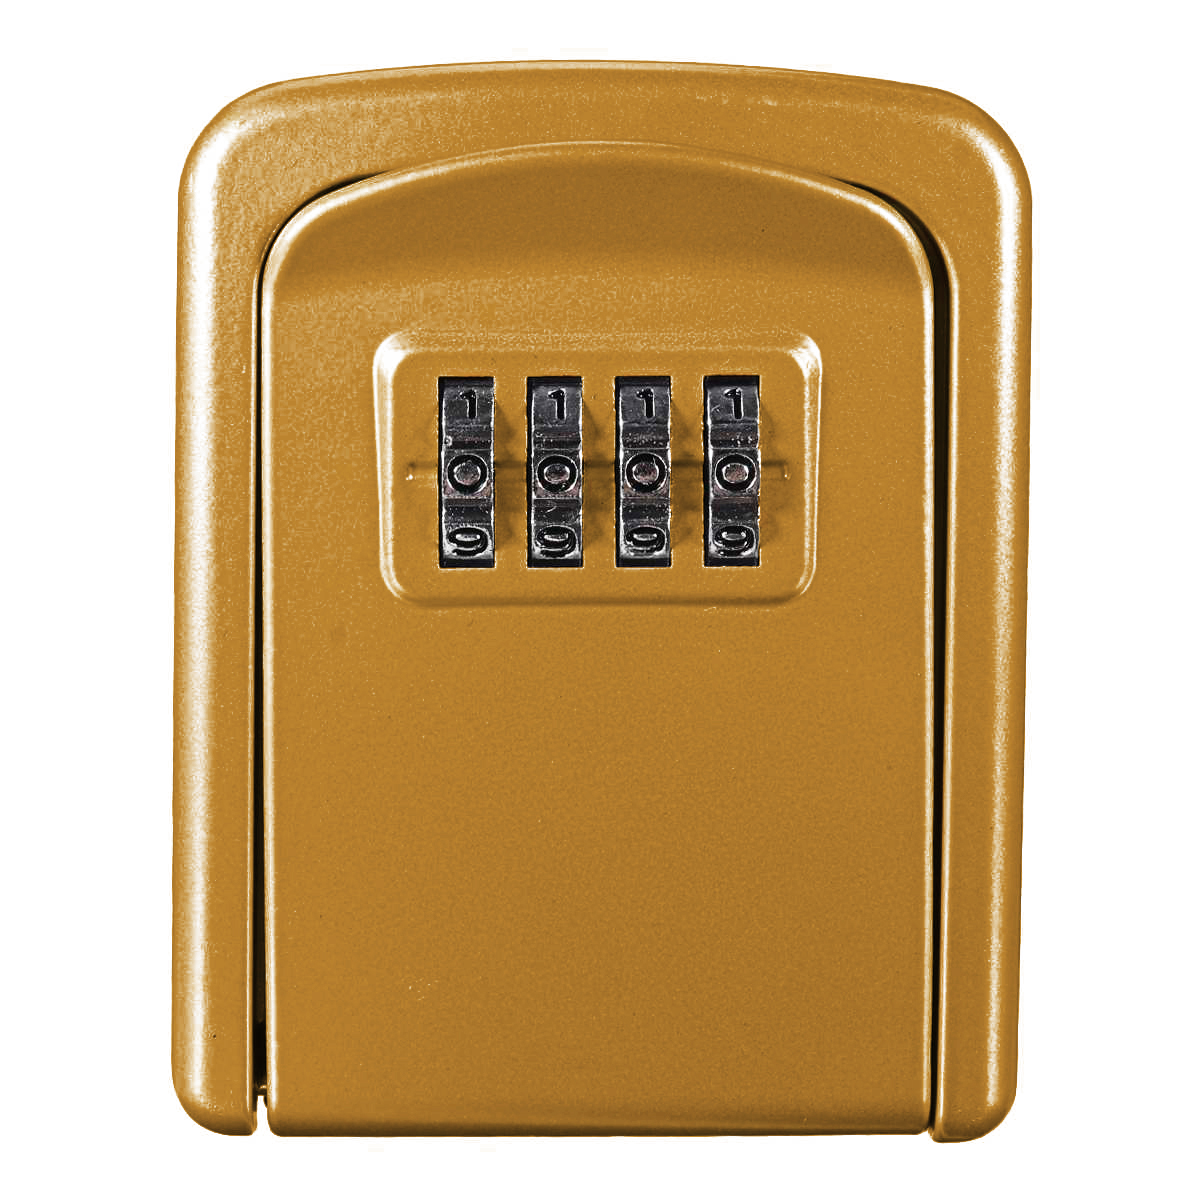 Антивандальный настенный мини сейф Gerui KS-04G для ключей, с кодовым замком, Золотой